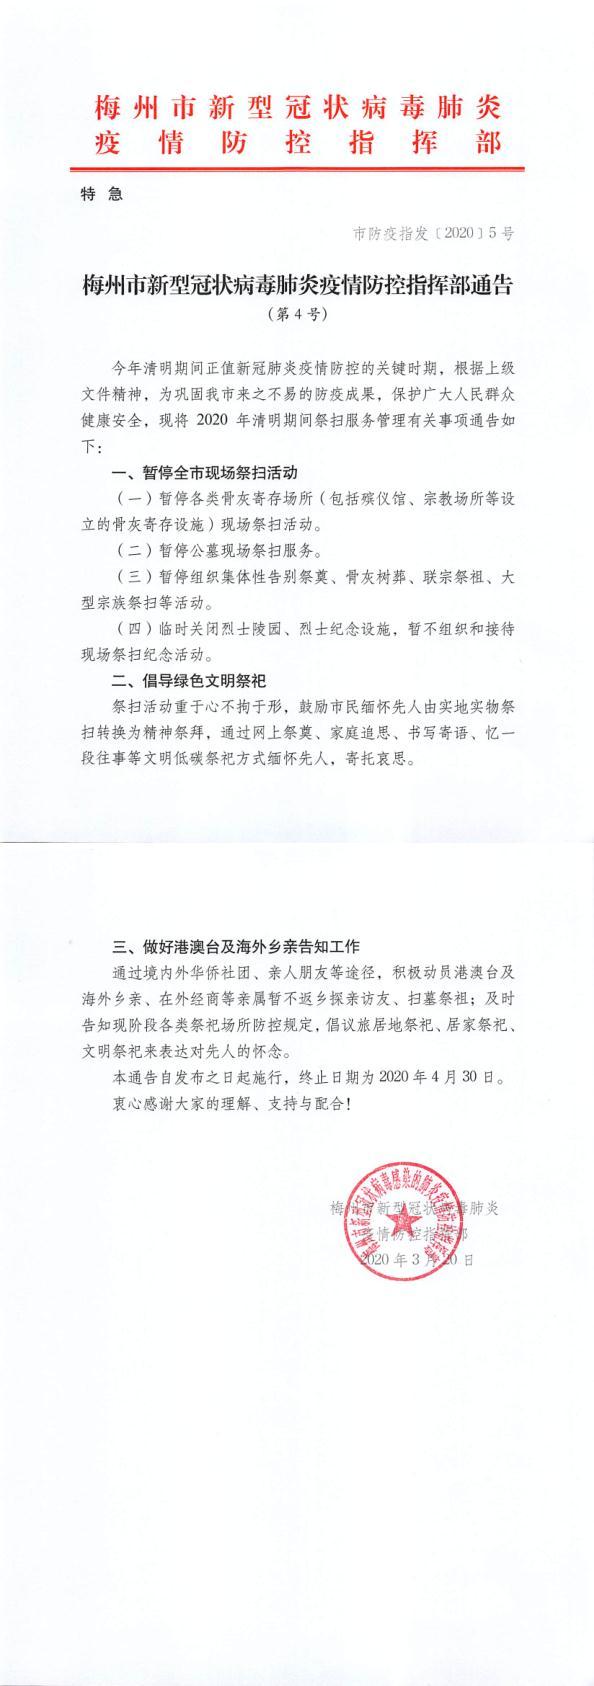 梅州市新型冠状病毒肺炎疫情防控指挥部通告（第4号）_1_2.jpg